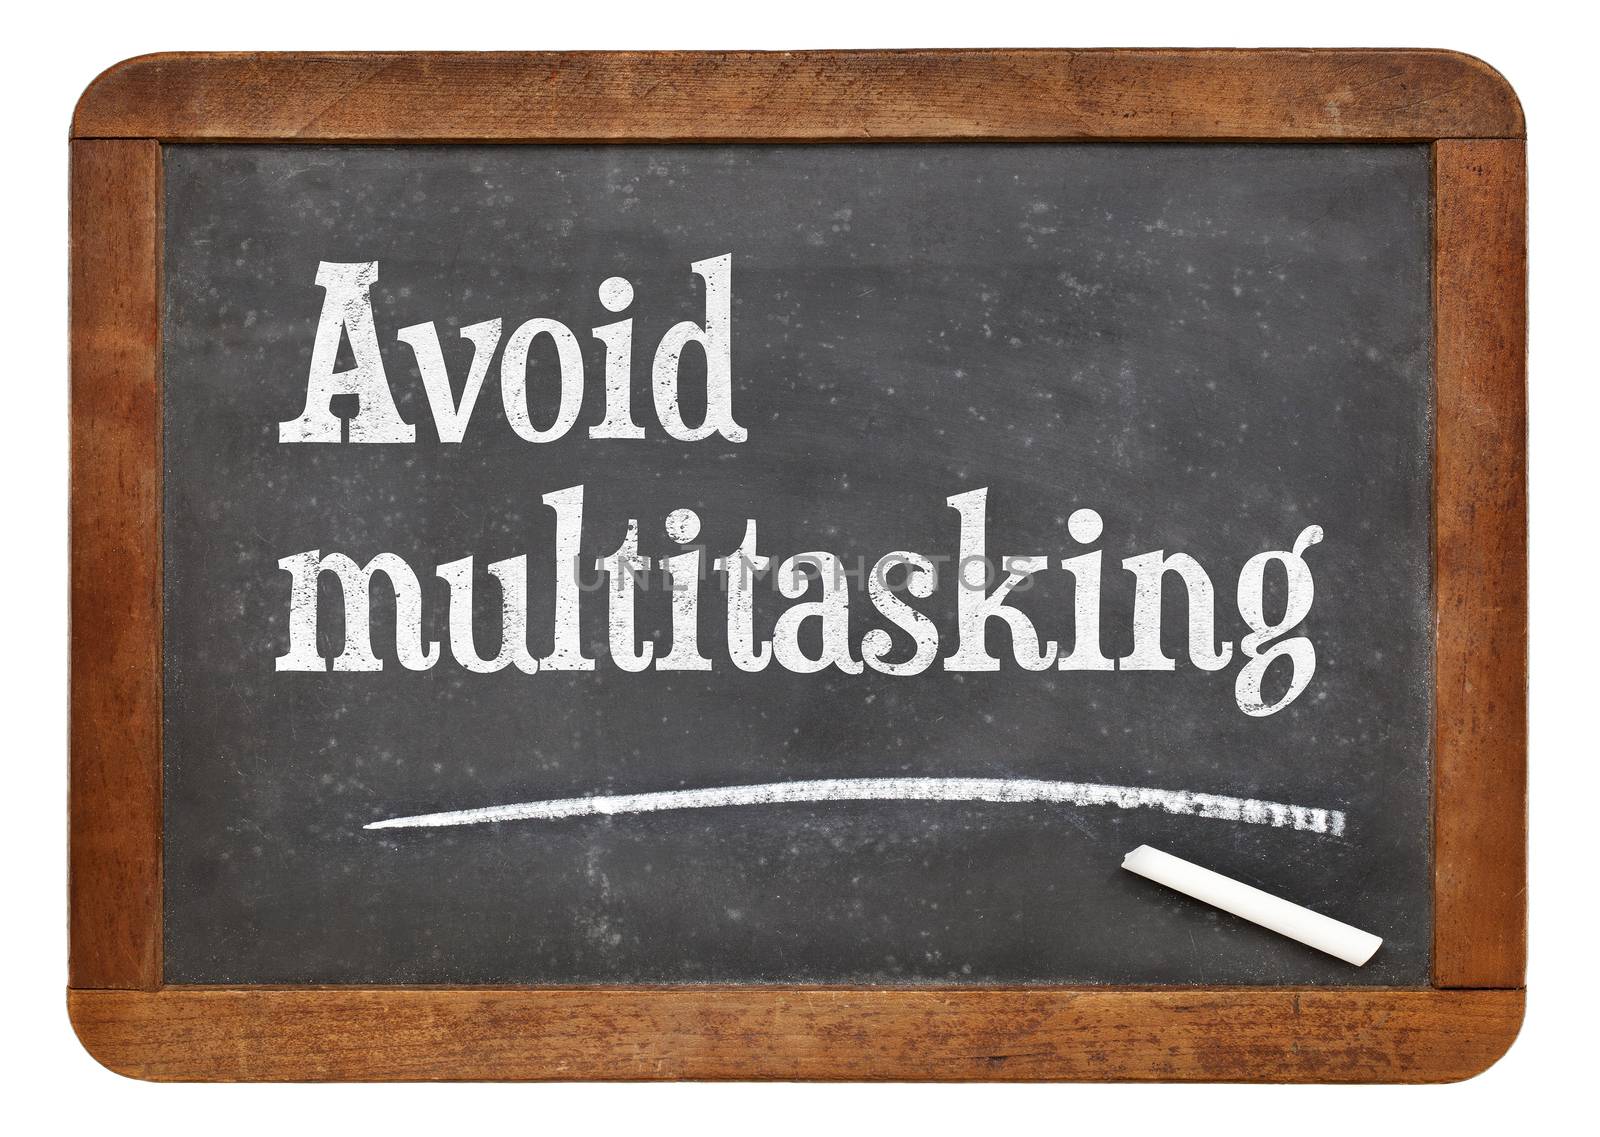 Avoid multitasking advice  on a vintage slate blackboard